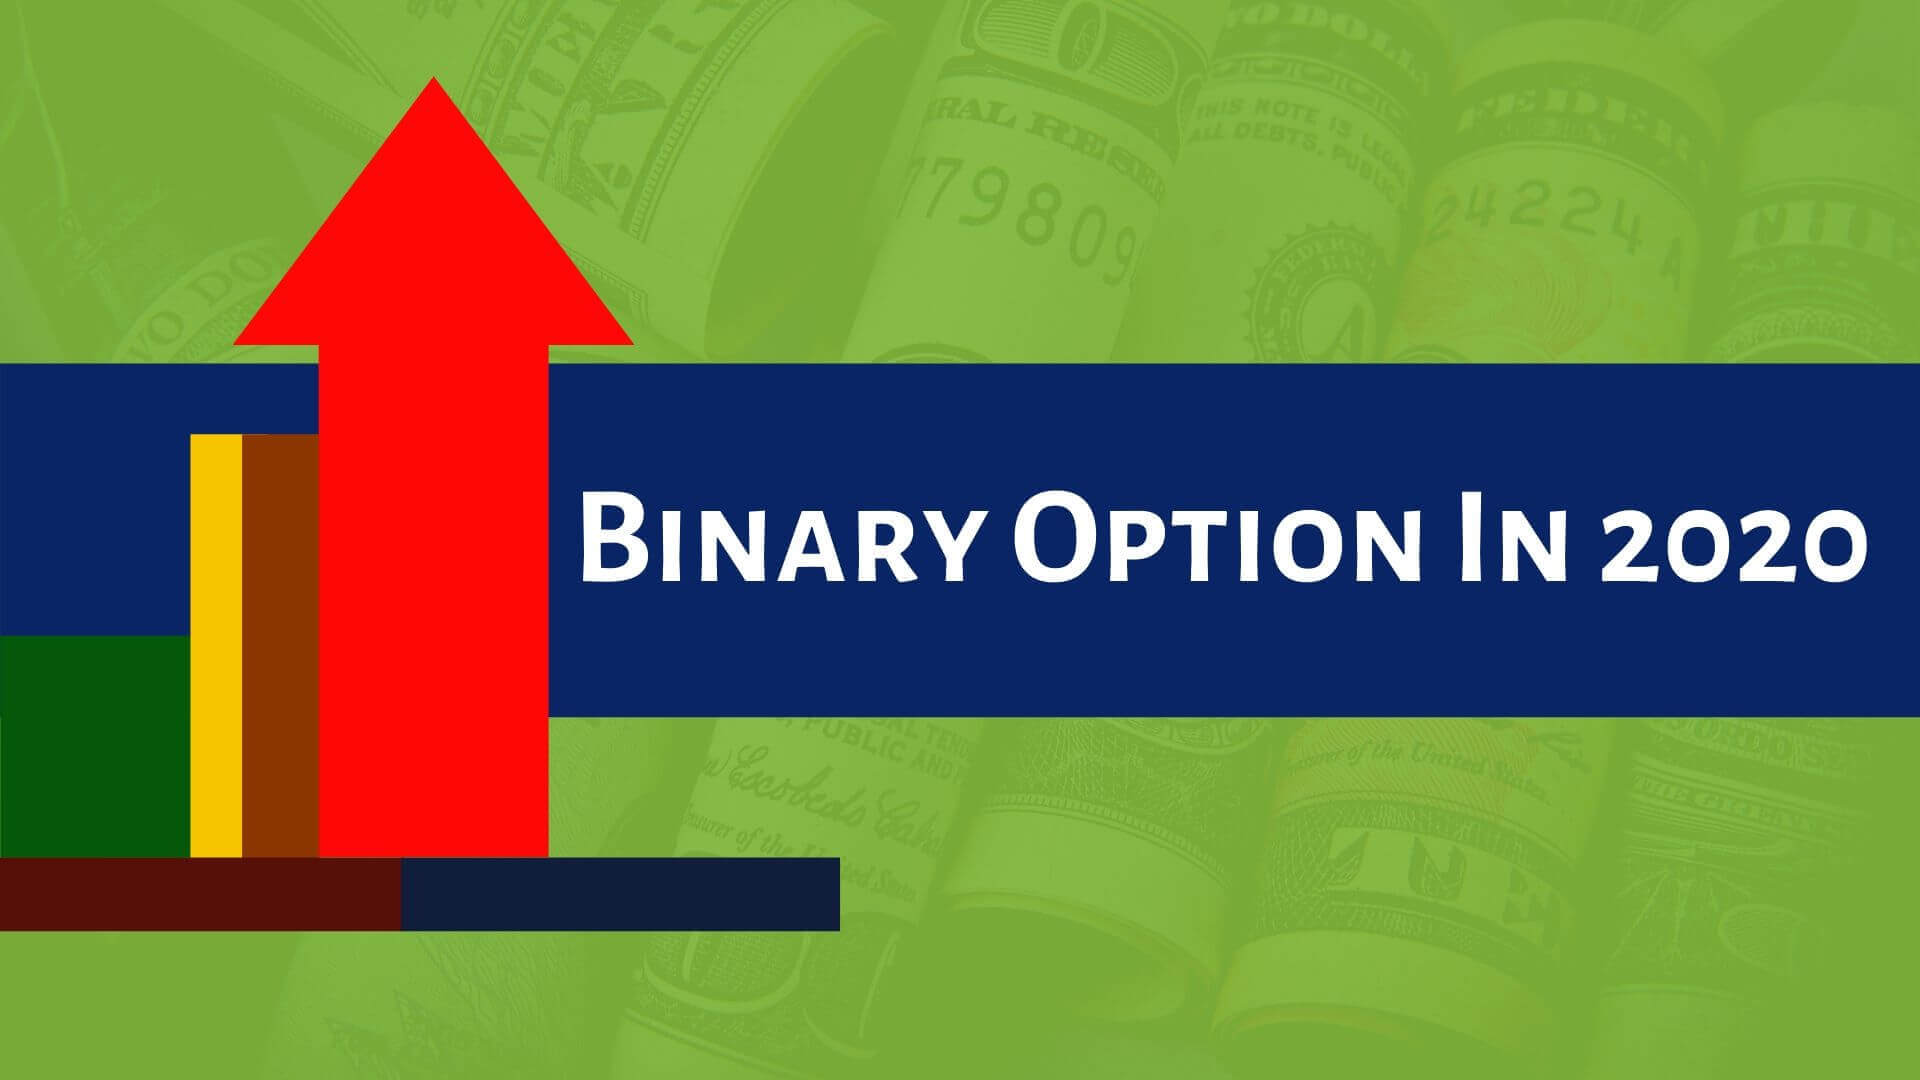 Seminar binary option surabaya - Seminar Binary Option Surabaya